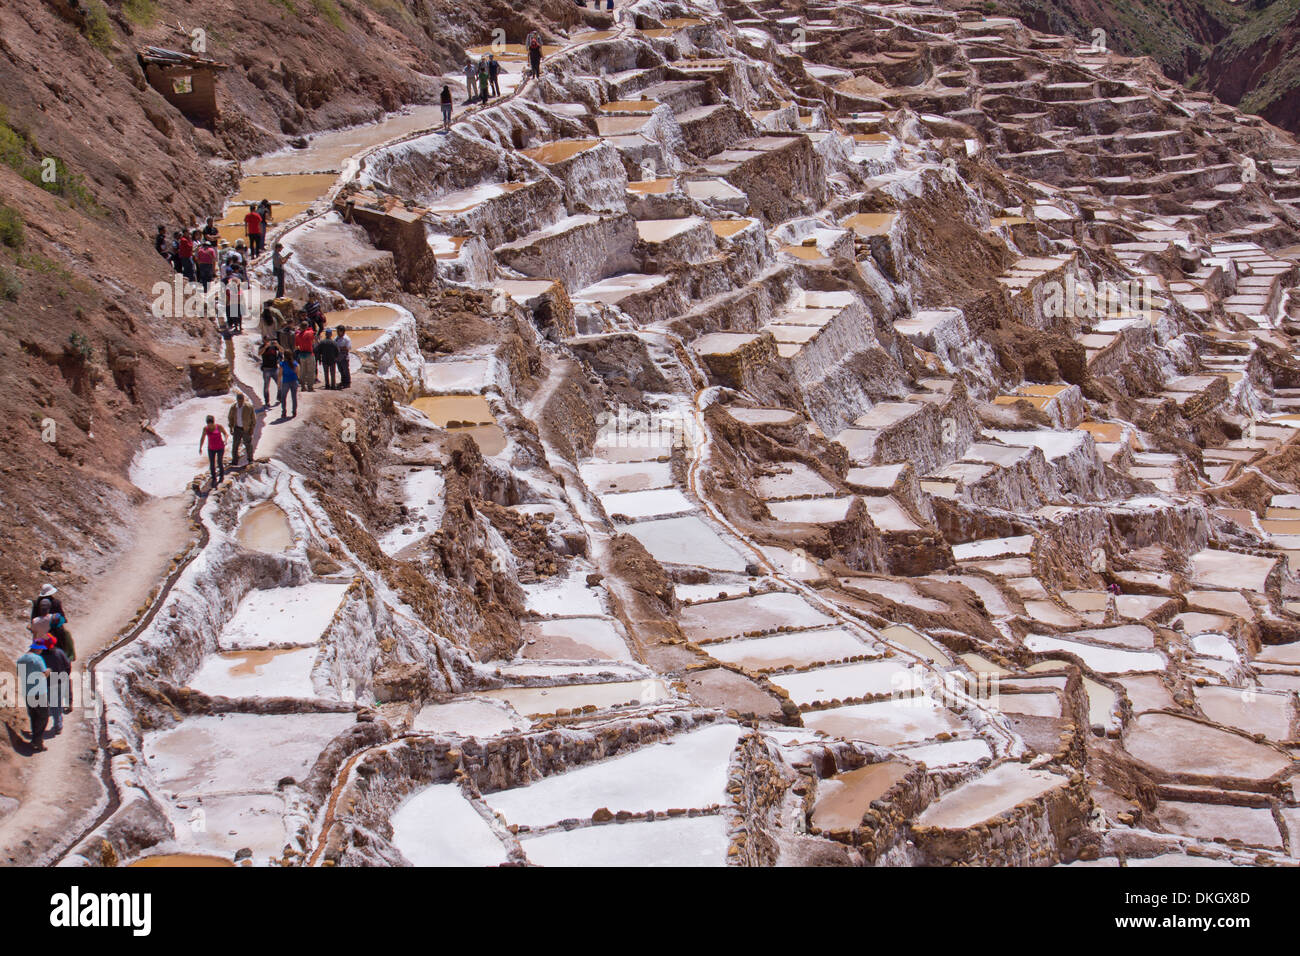 Les mines de sel de Las Salinas de Maras, où chaque petite parcelle est propriété individuelle, le Pérou, Amérique du Sud Banque D'Images